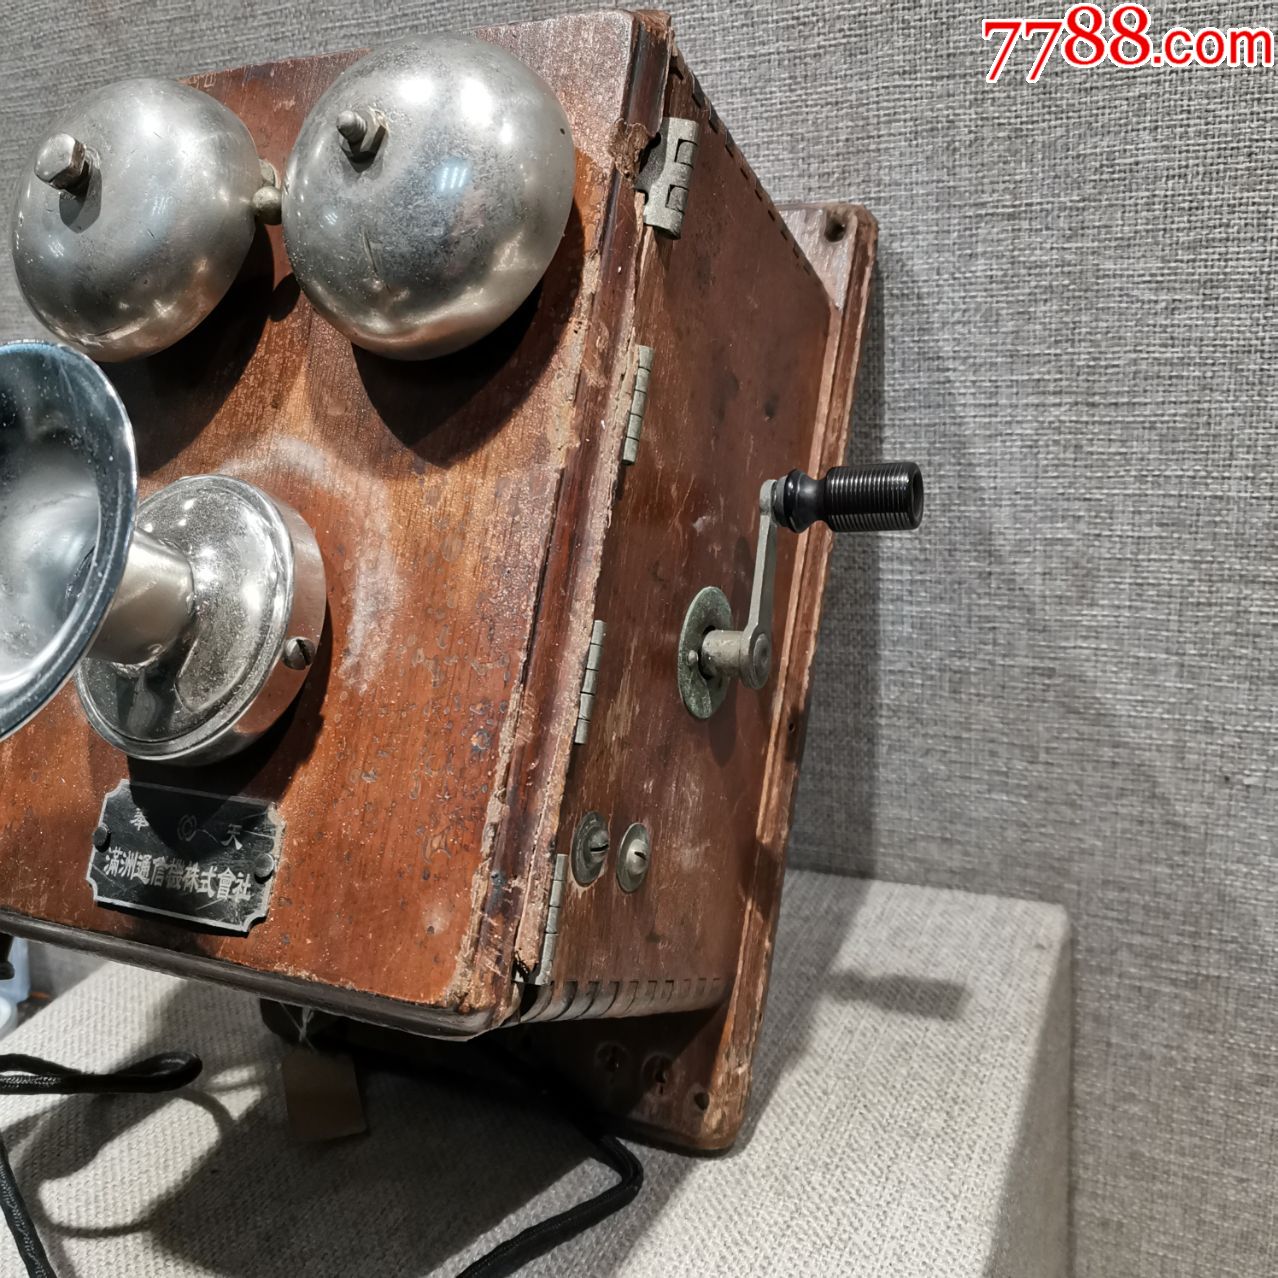 二战收藏抗战时期老物件日军电话原品喇叭嘴后换_旧电话机_第3张_7788